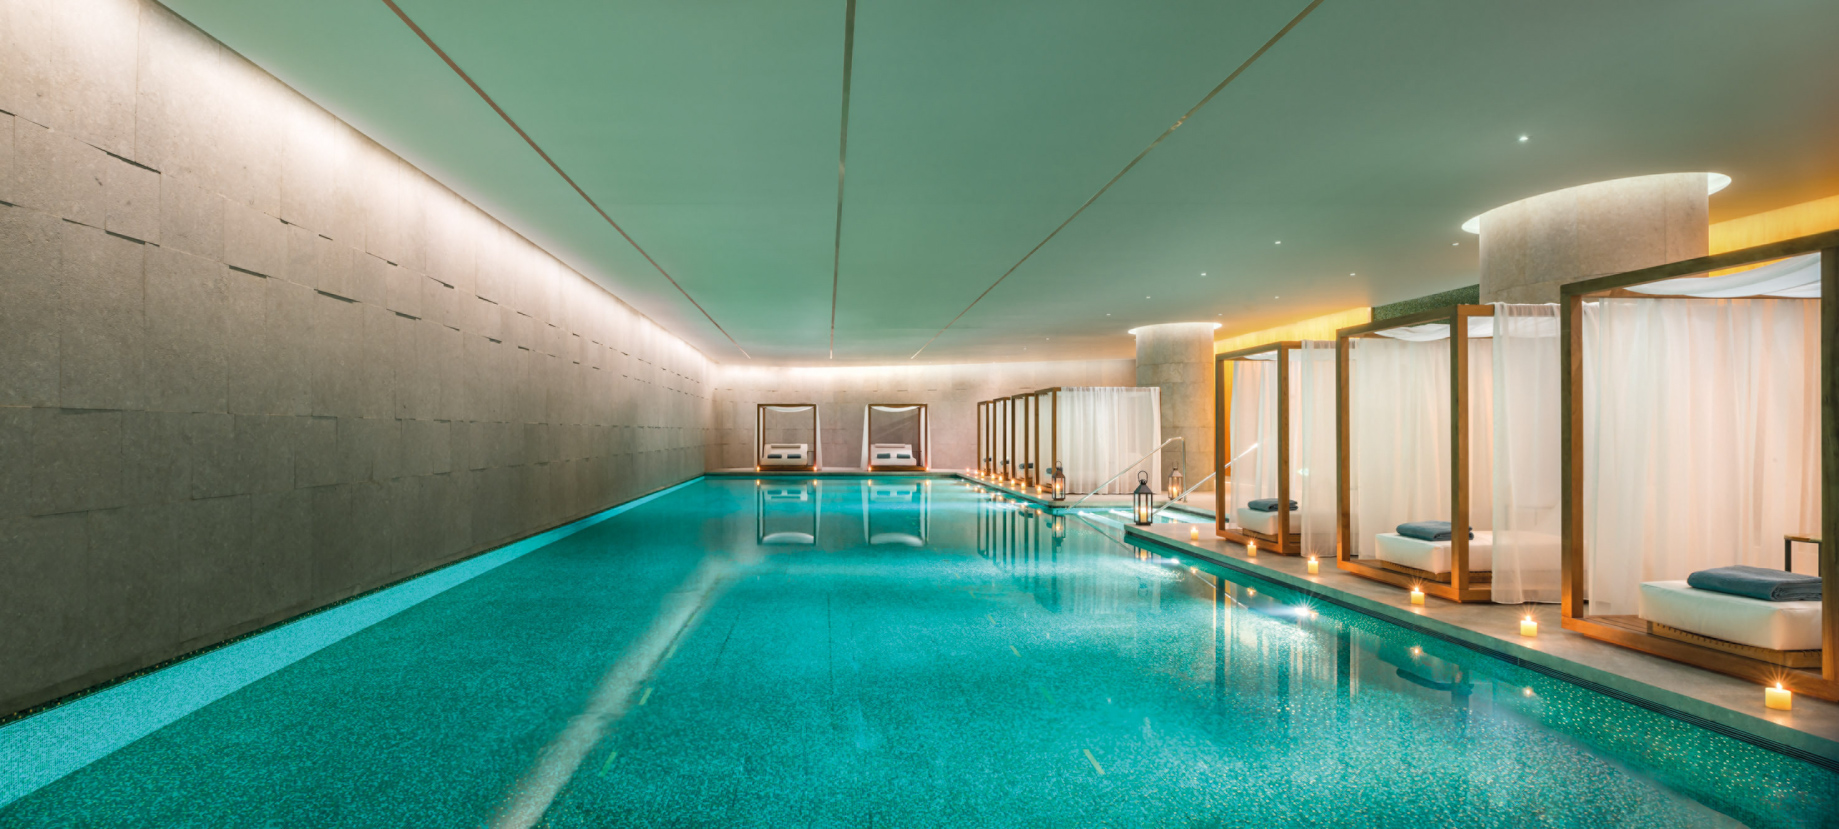 Bvlgari Hotel Beijing – Beijing, China – The Pool